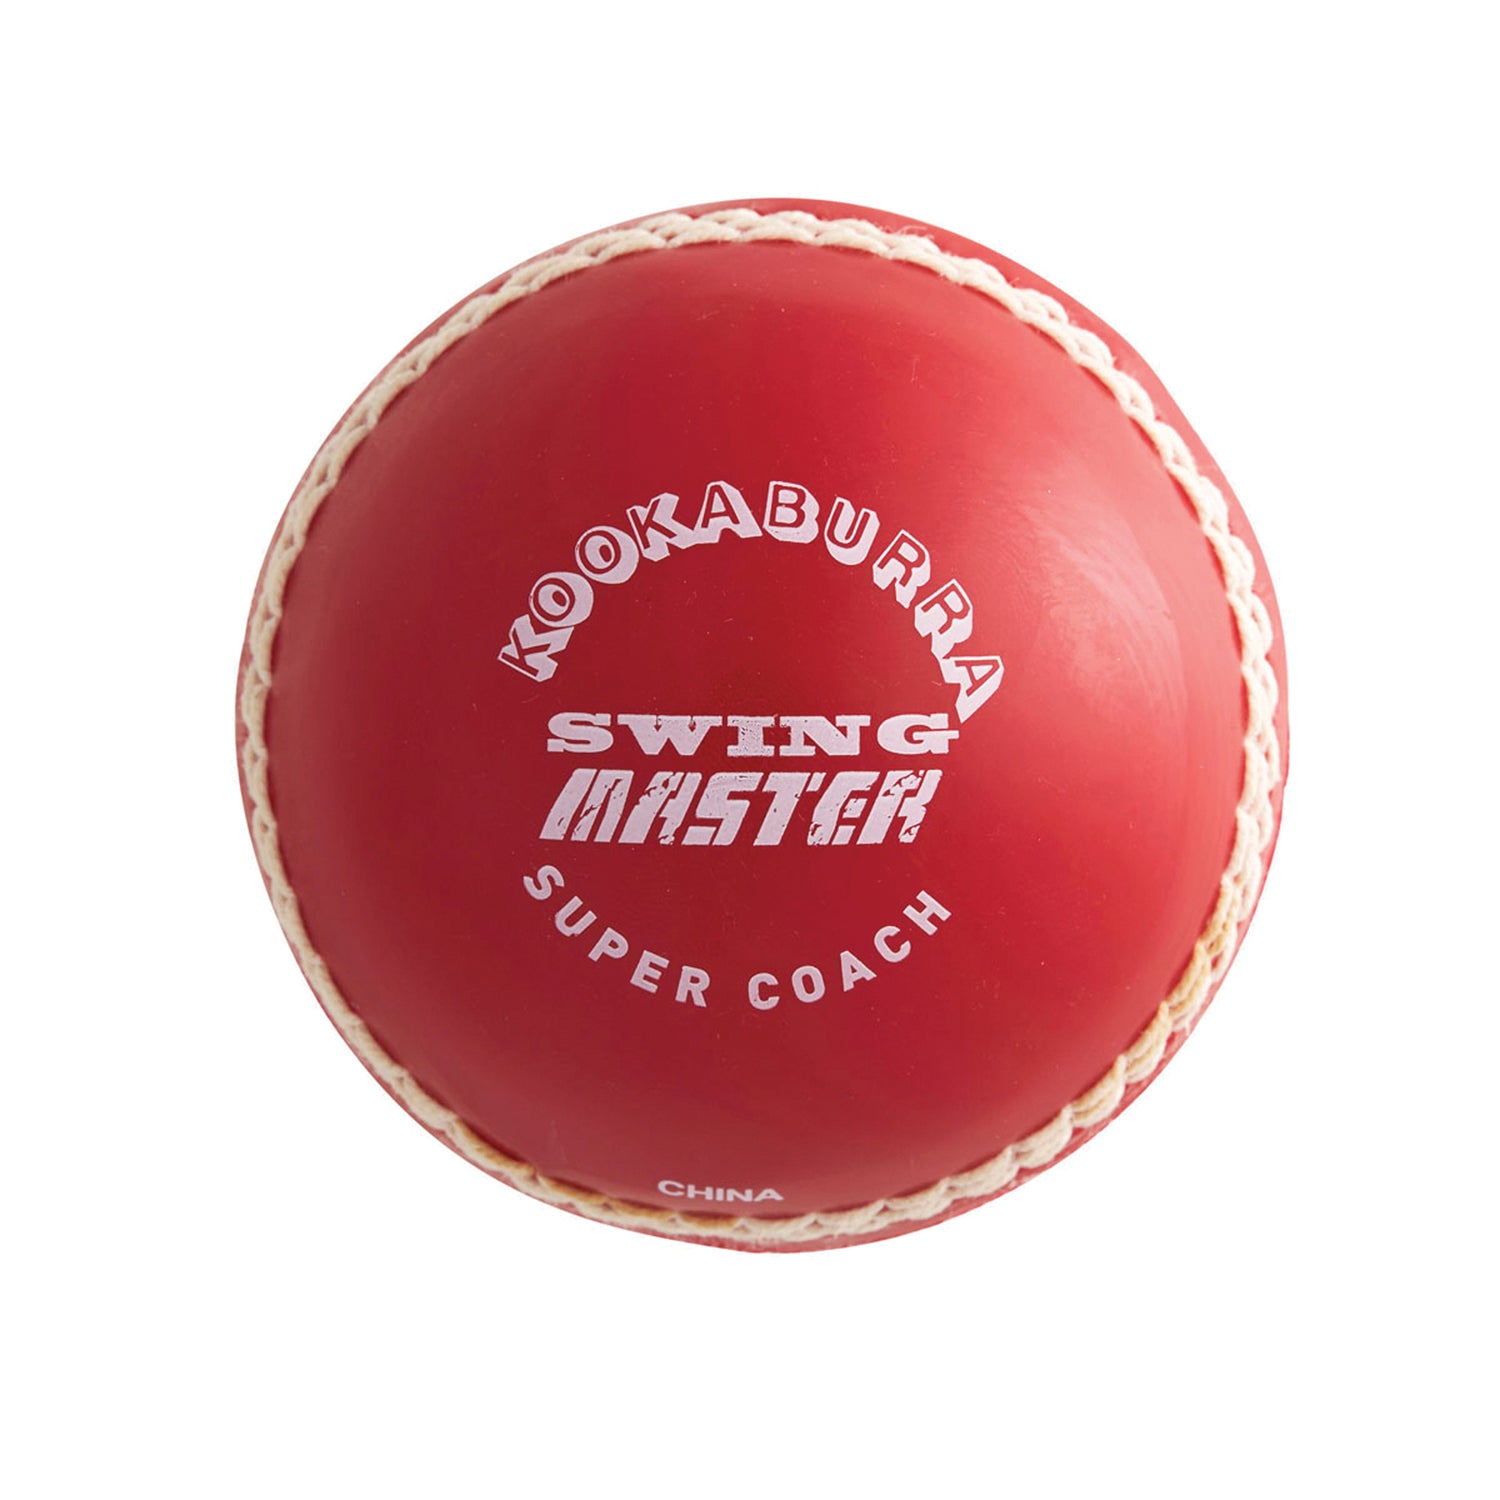 Kookaburra Swing Master Cricket Ball